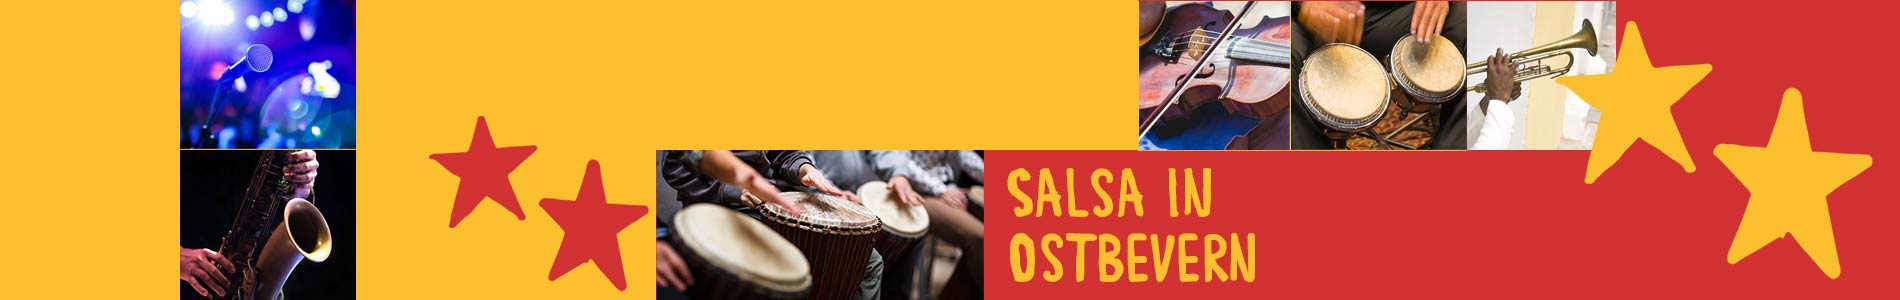 Salsa in Ostbevern – Salsa lernen und tanzen, Tanzkurse, Partys, Veranstaltungen